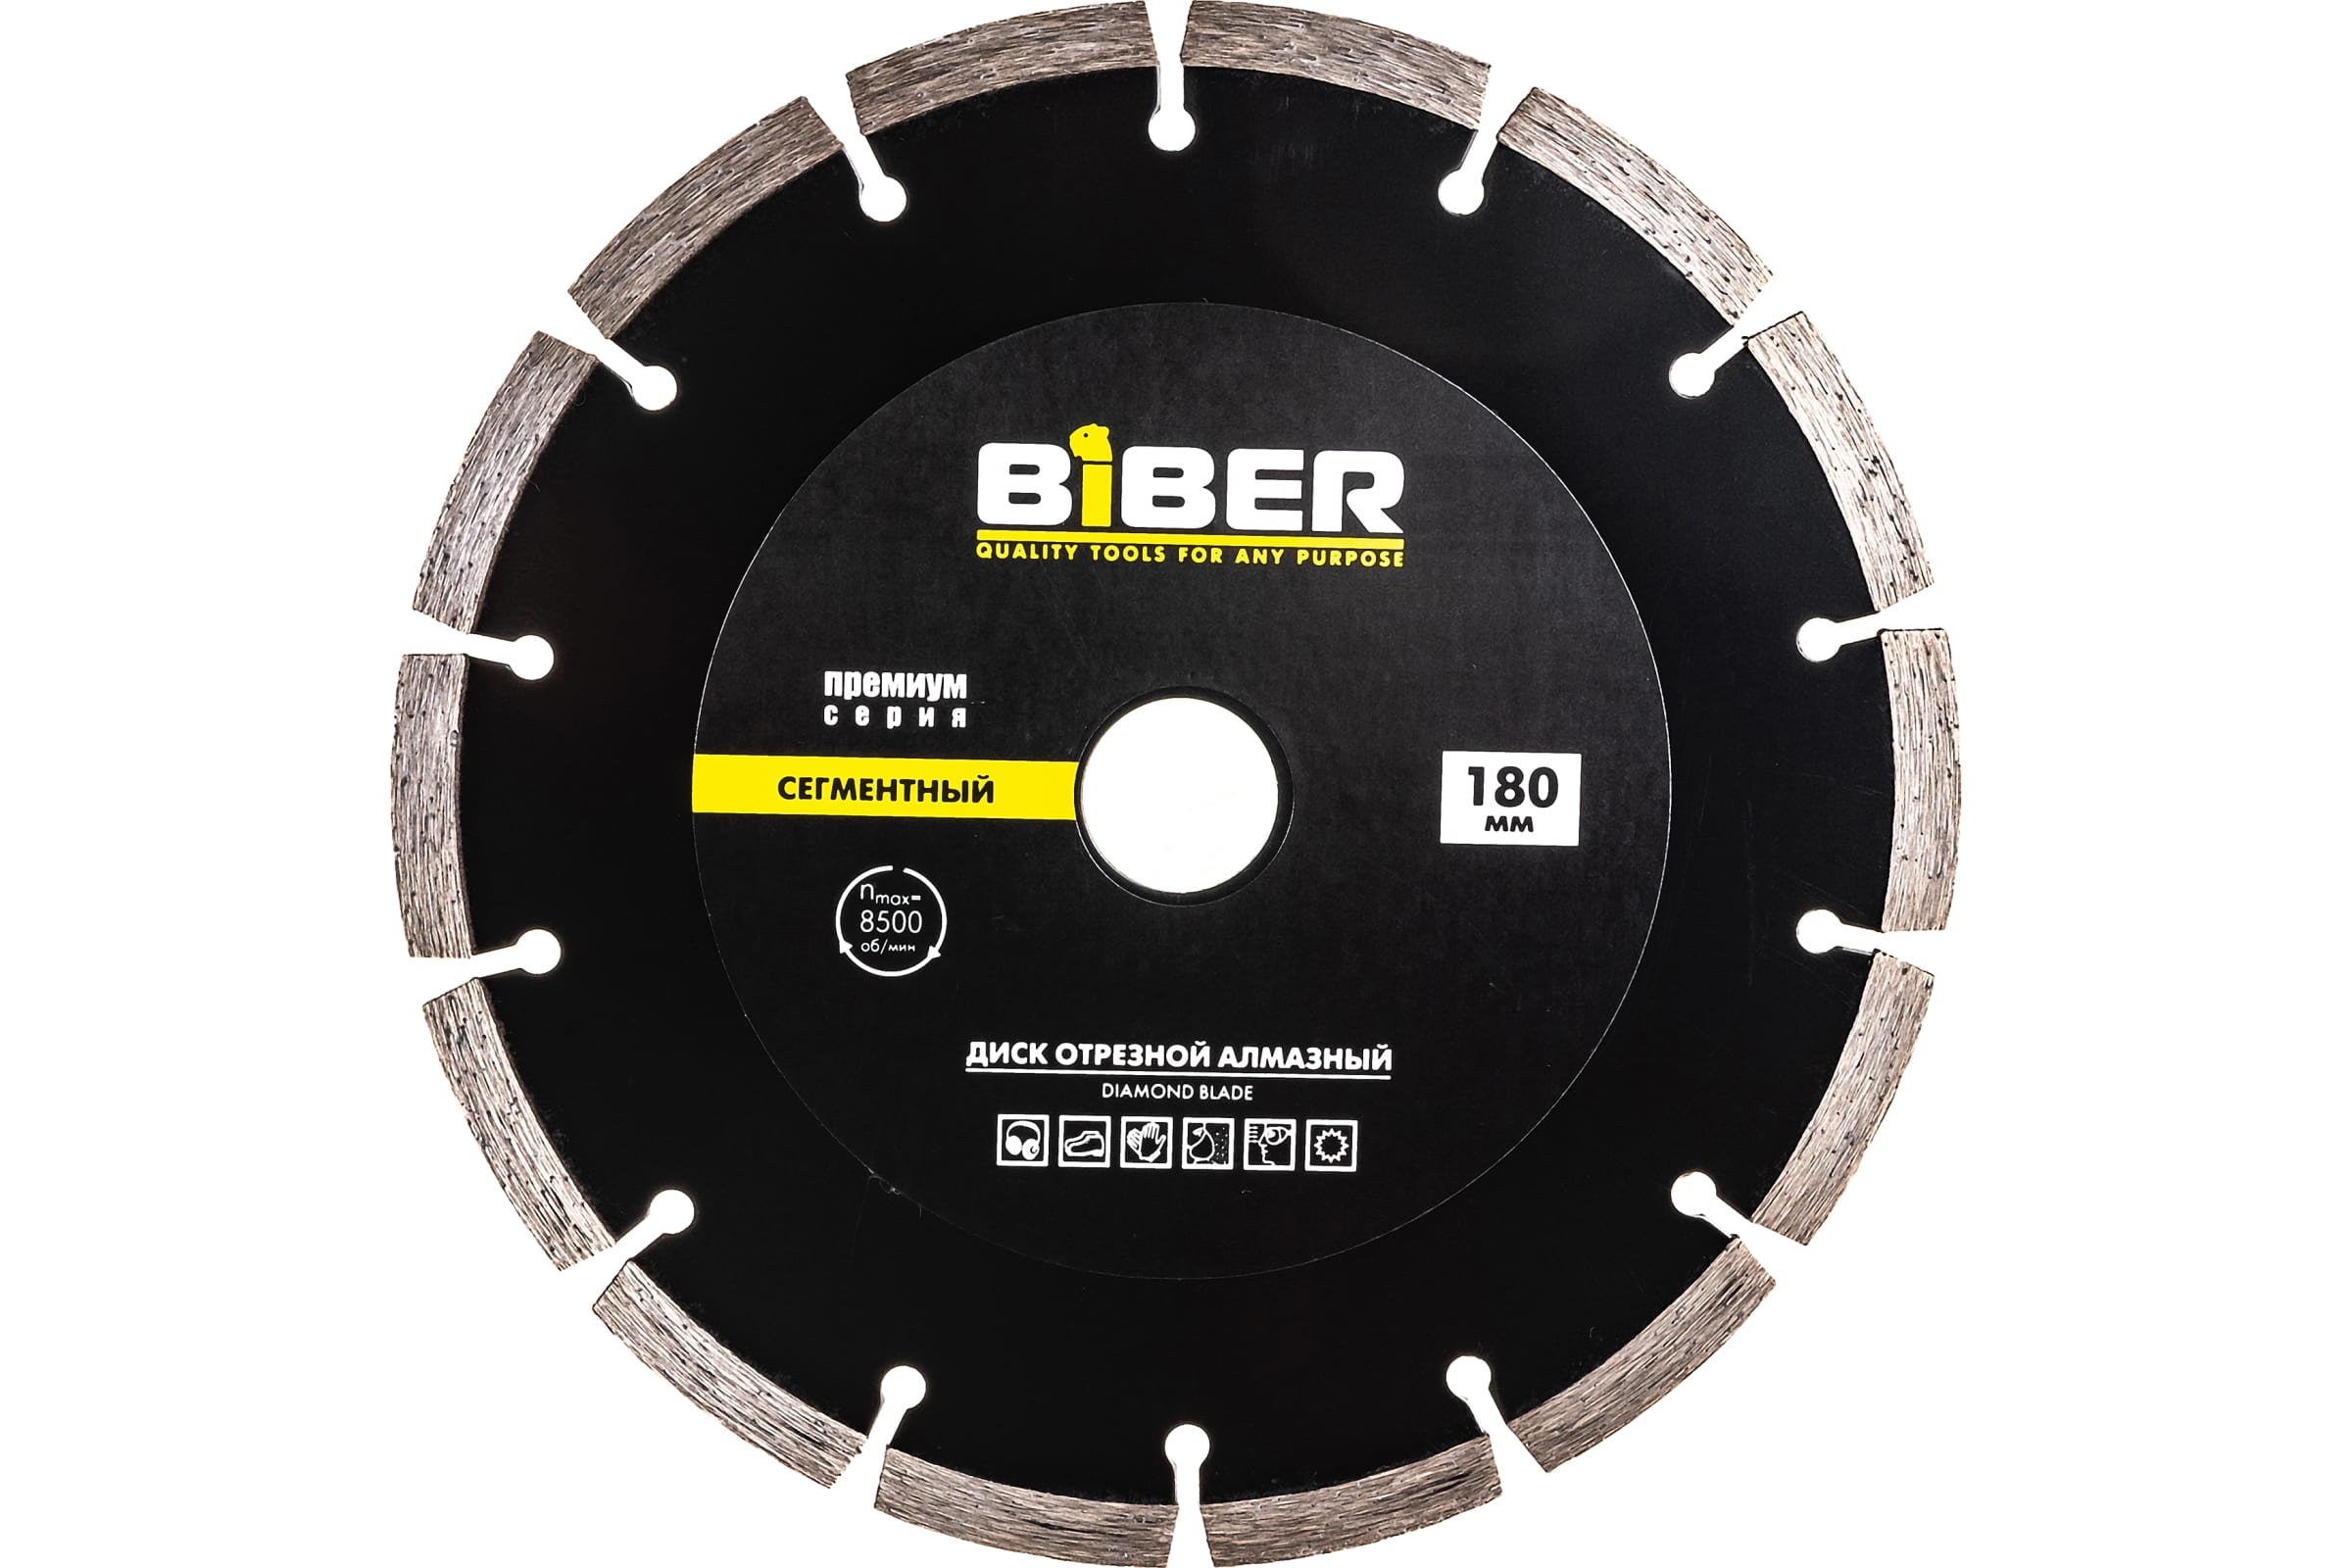 фото Biber диск алмазный сегментный премиум 180мм 70265 тов-039553